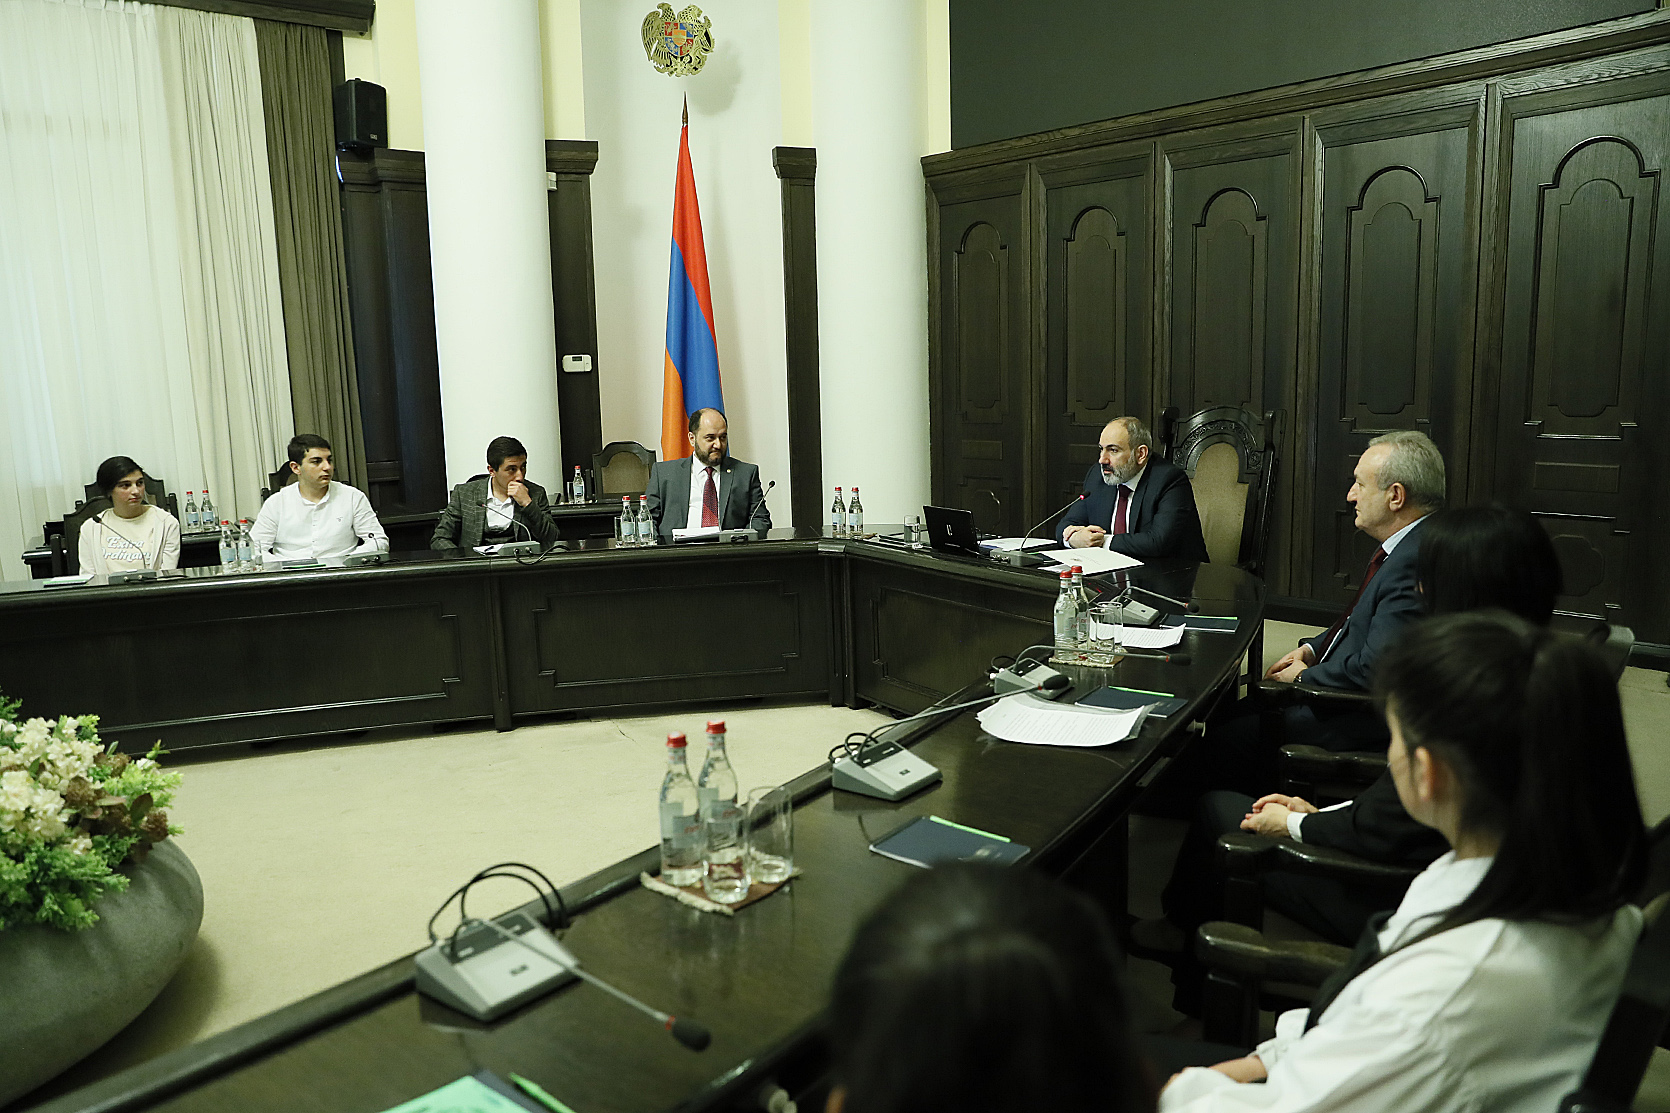 Мы отмечаем День гражданина в ознаменование того, что в Армении источником власти и де-юре, и де-факто является народ: премьер-министр